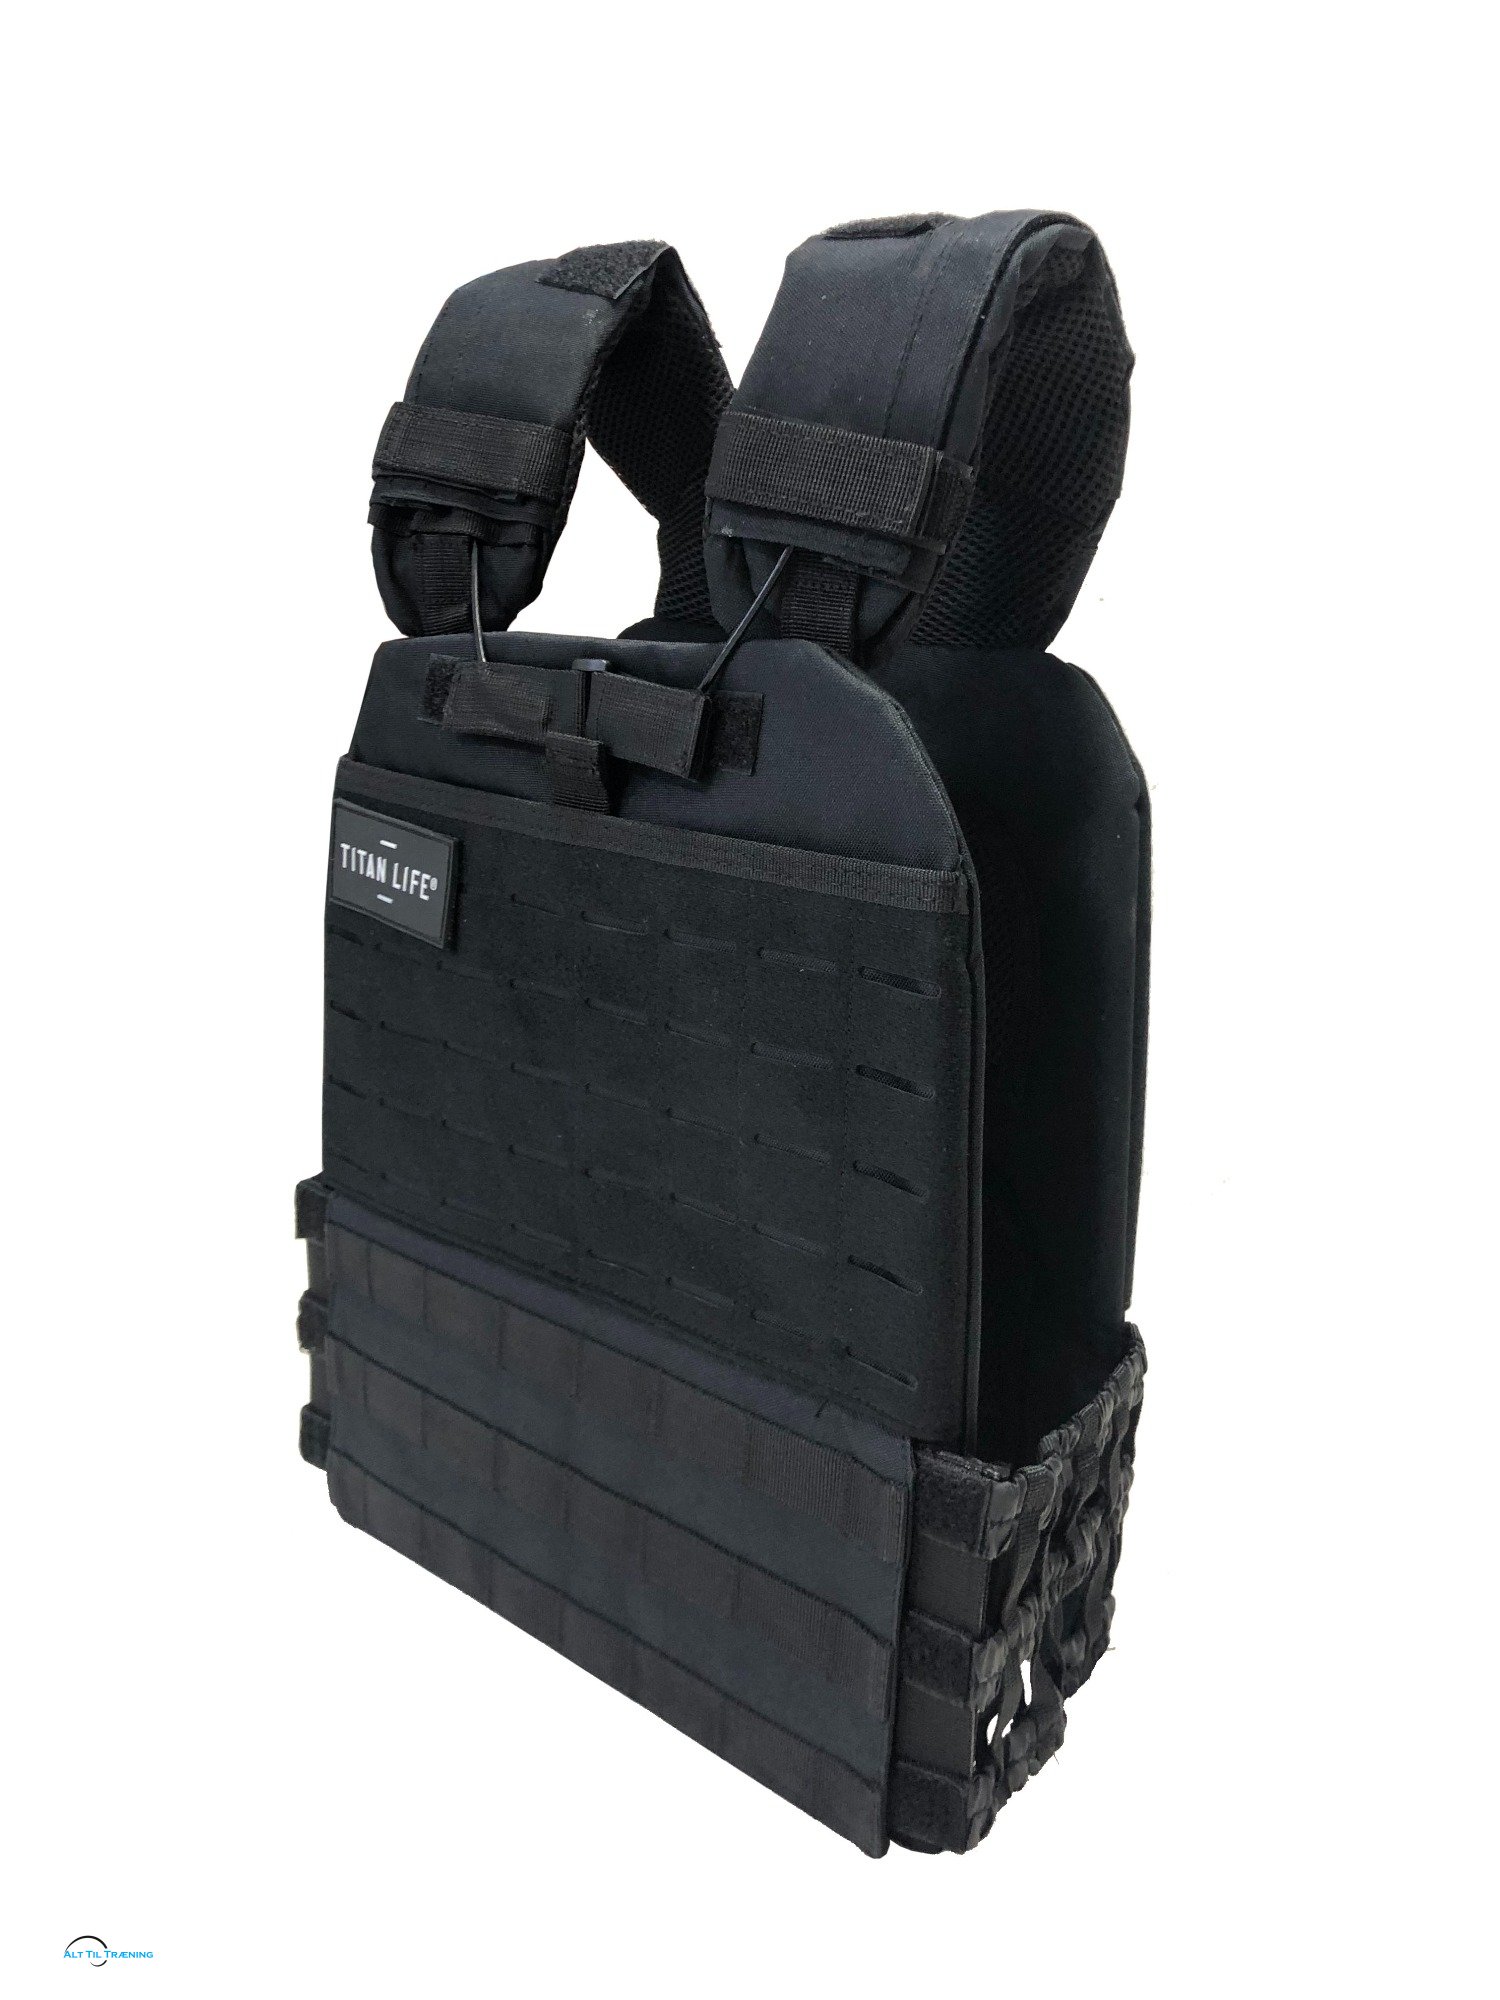 TITAN LIFE Tactical Vest 6,7 Kg., Black